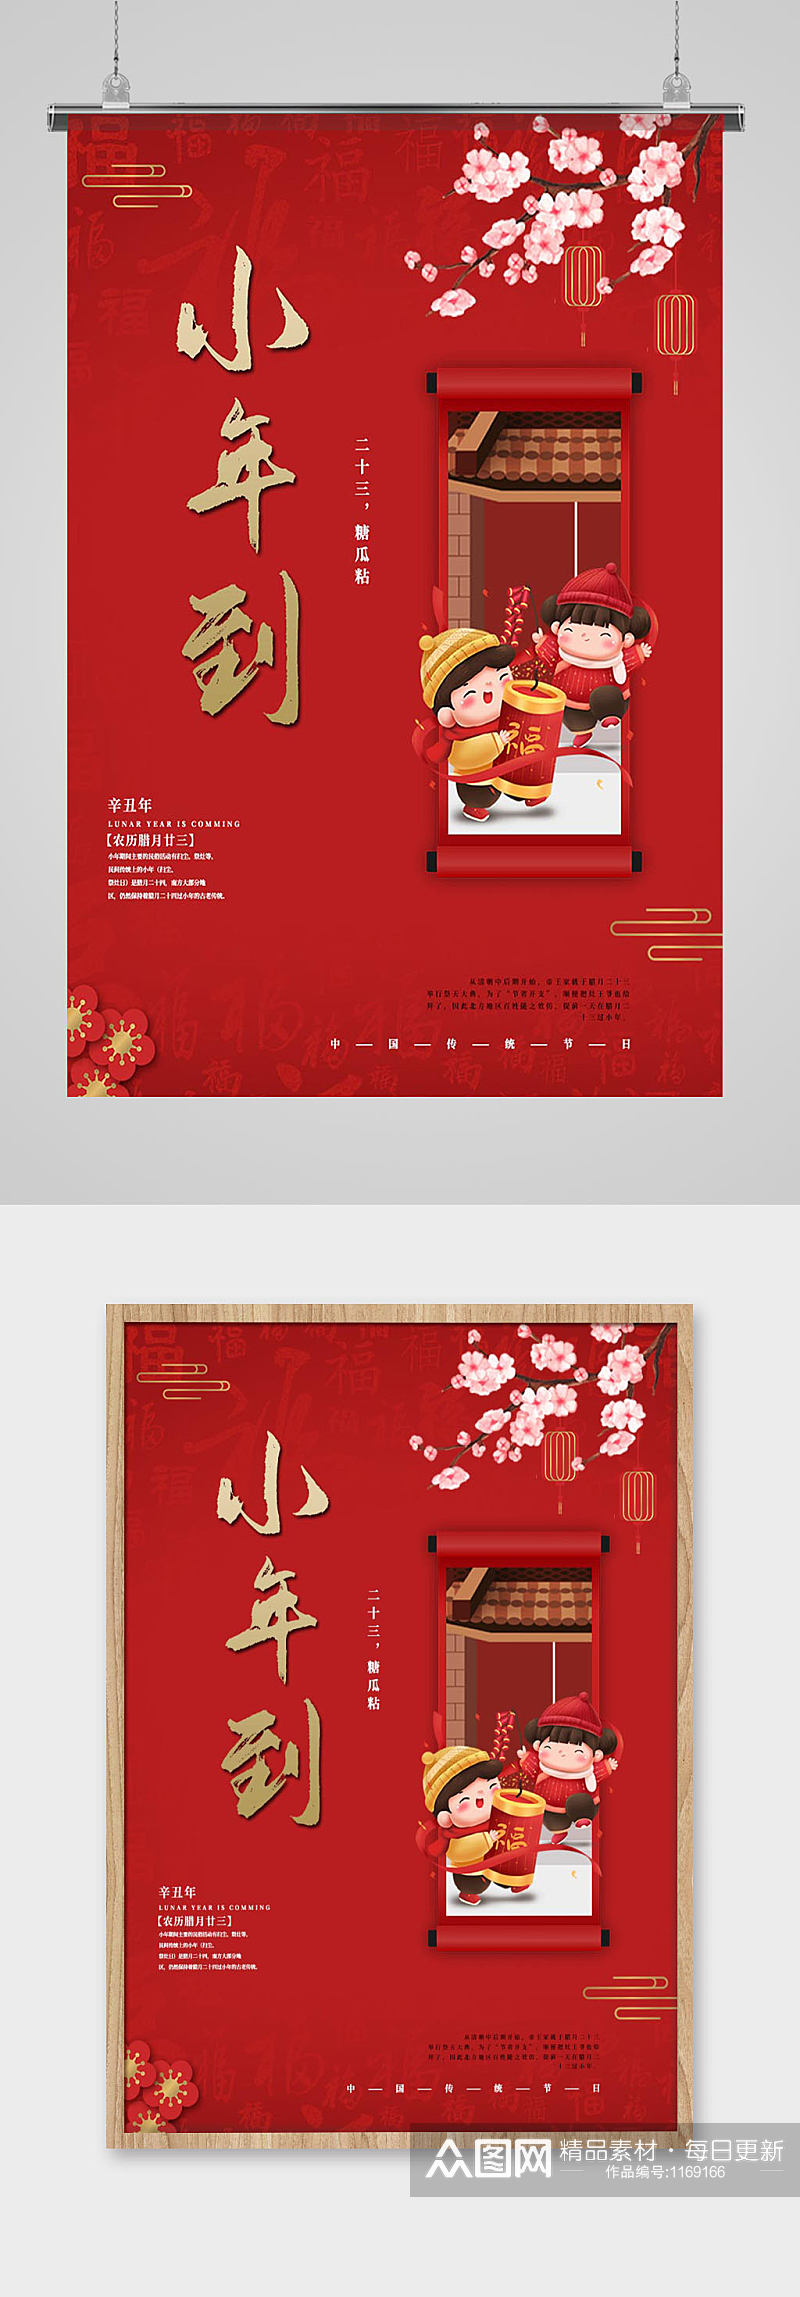 创意中国红梅花人物插画中国风小年节日海报素材